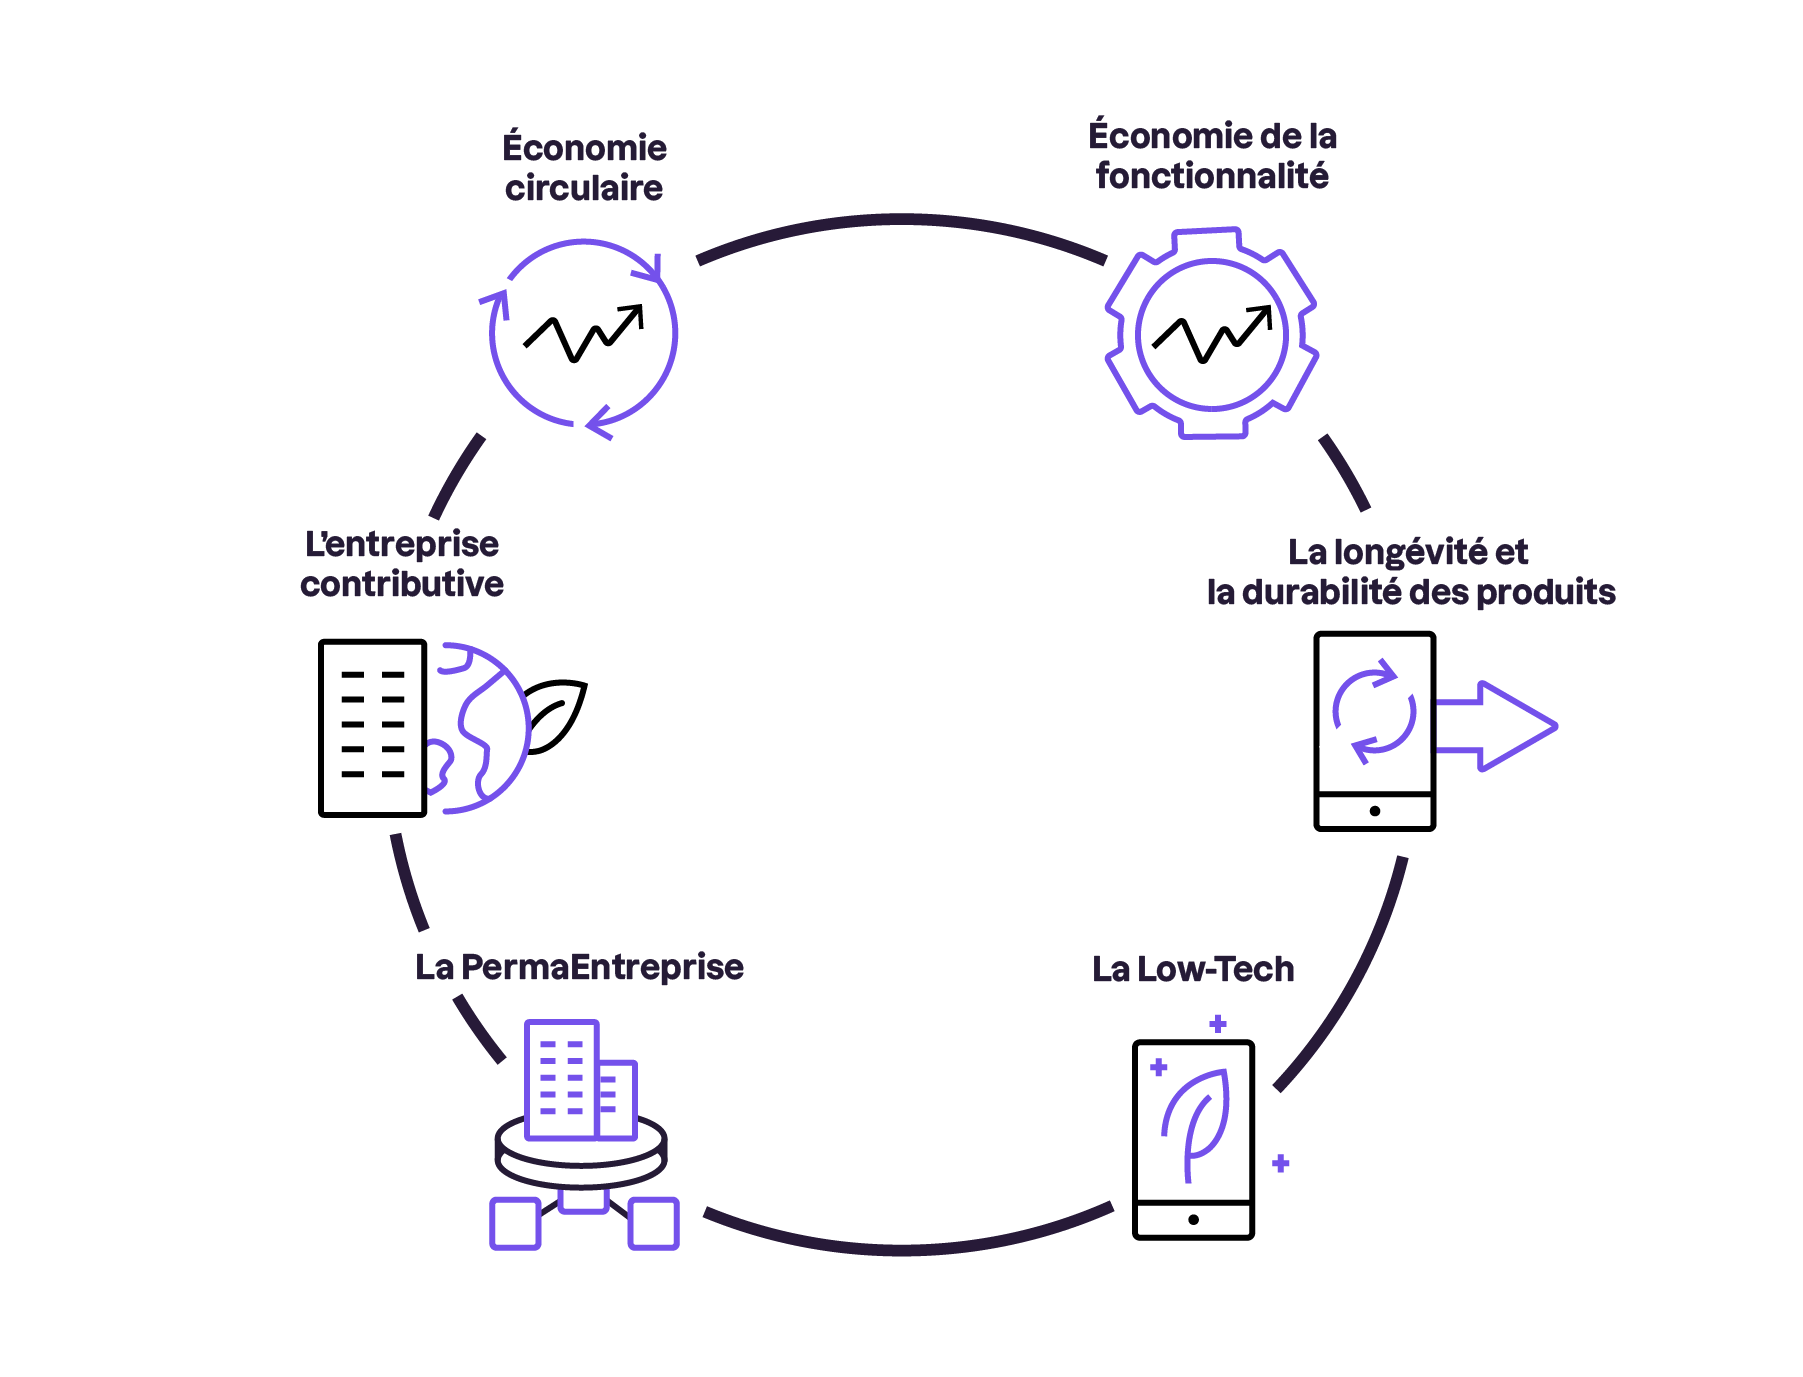 Schéma circulaire répertoriant les différentes approches : économie de la fonctionnalité, longévité et durabilité des produits, Low-Tech, Permaentreprise, entreprise contributive, économie circulaire